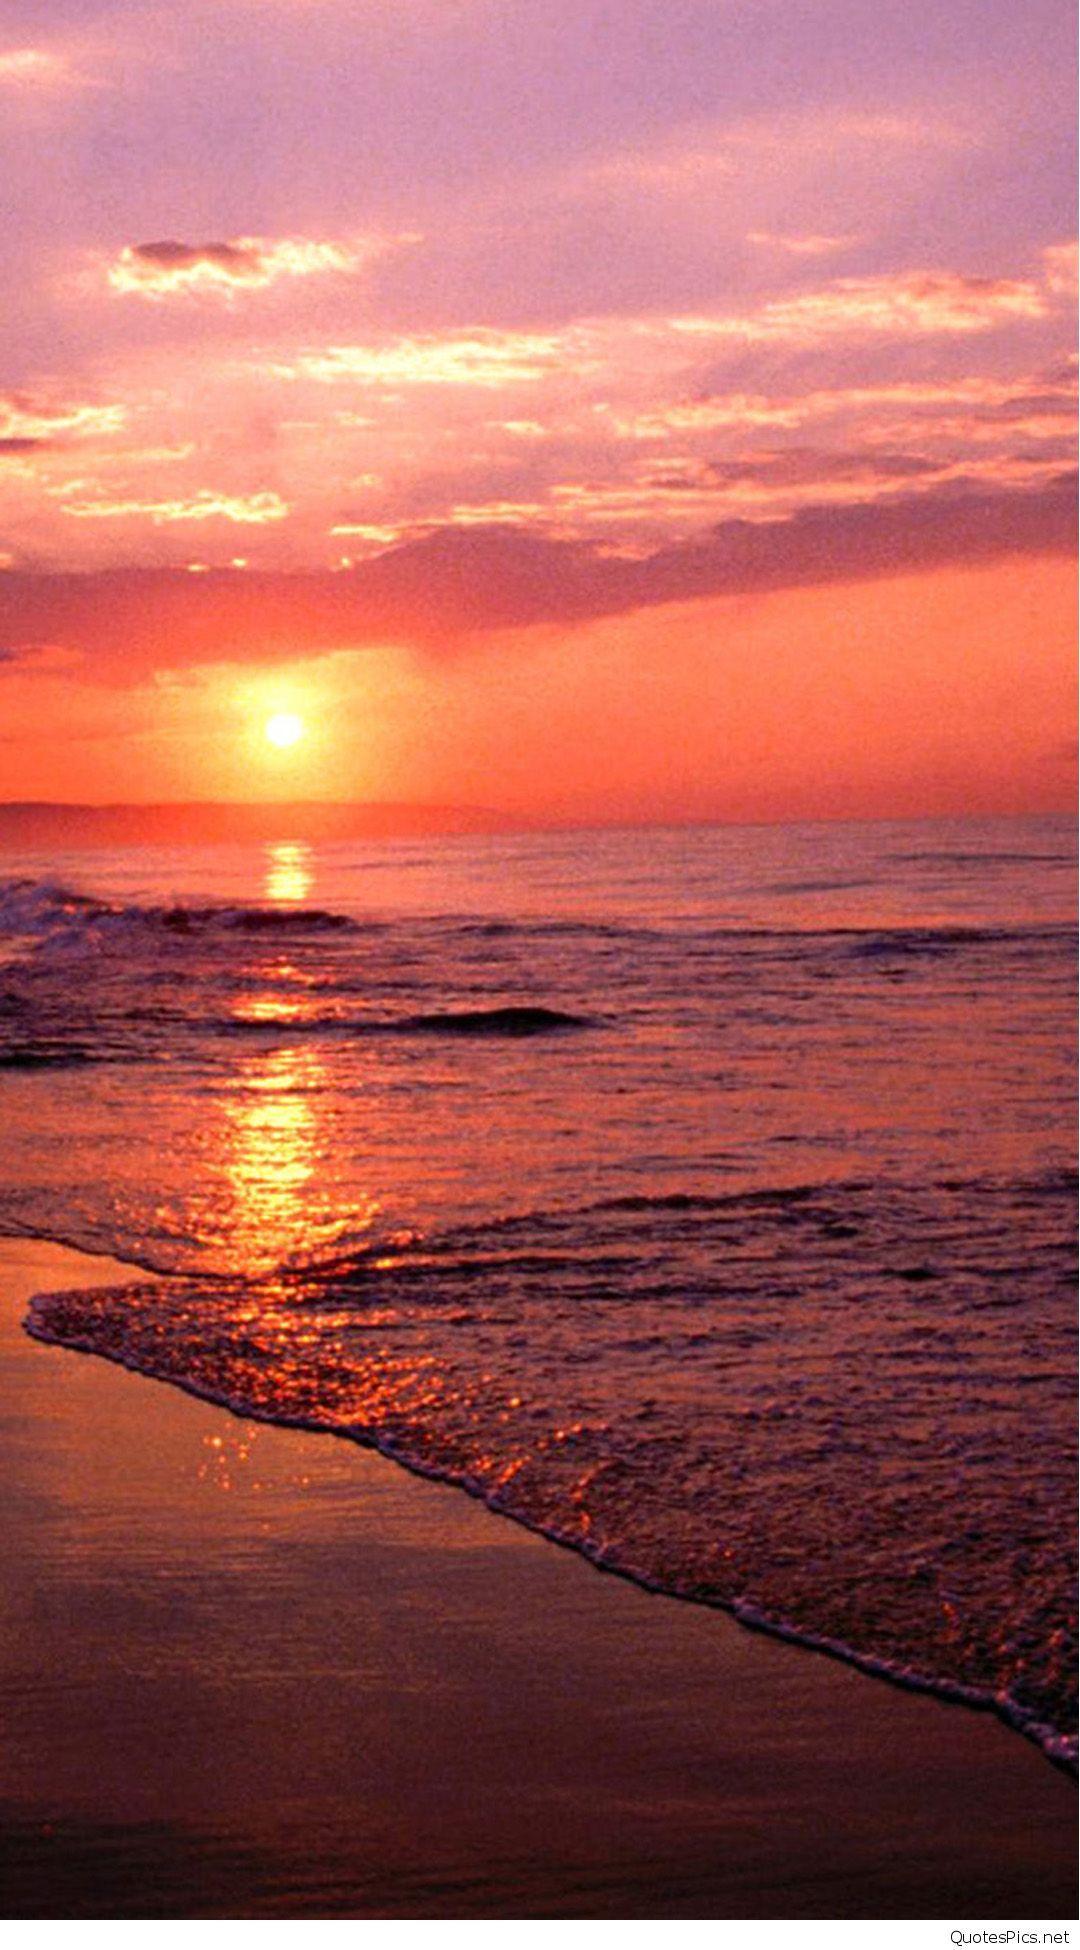 Hình nền biển tuyệt đẹp cho điện thoại iPhone - Ảnh đẹp Free